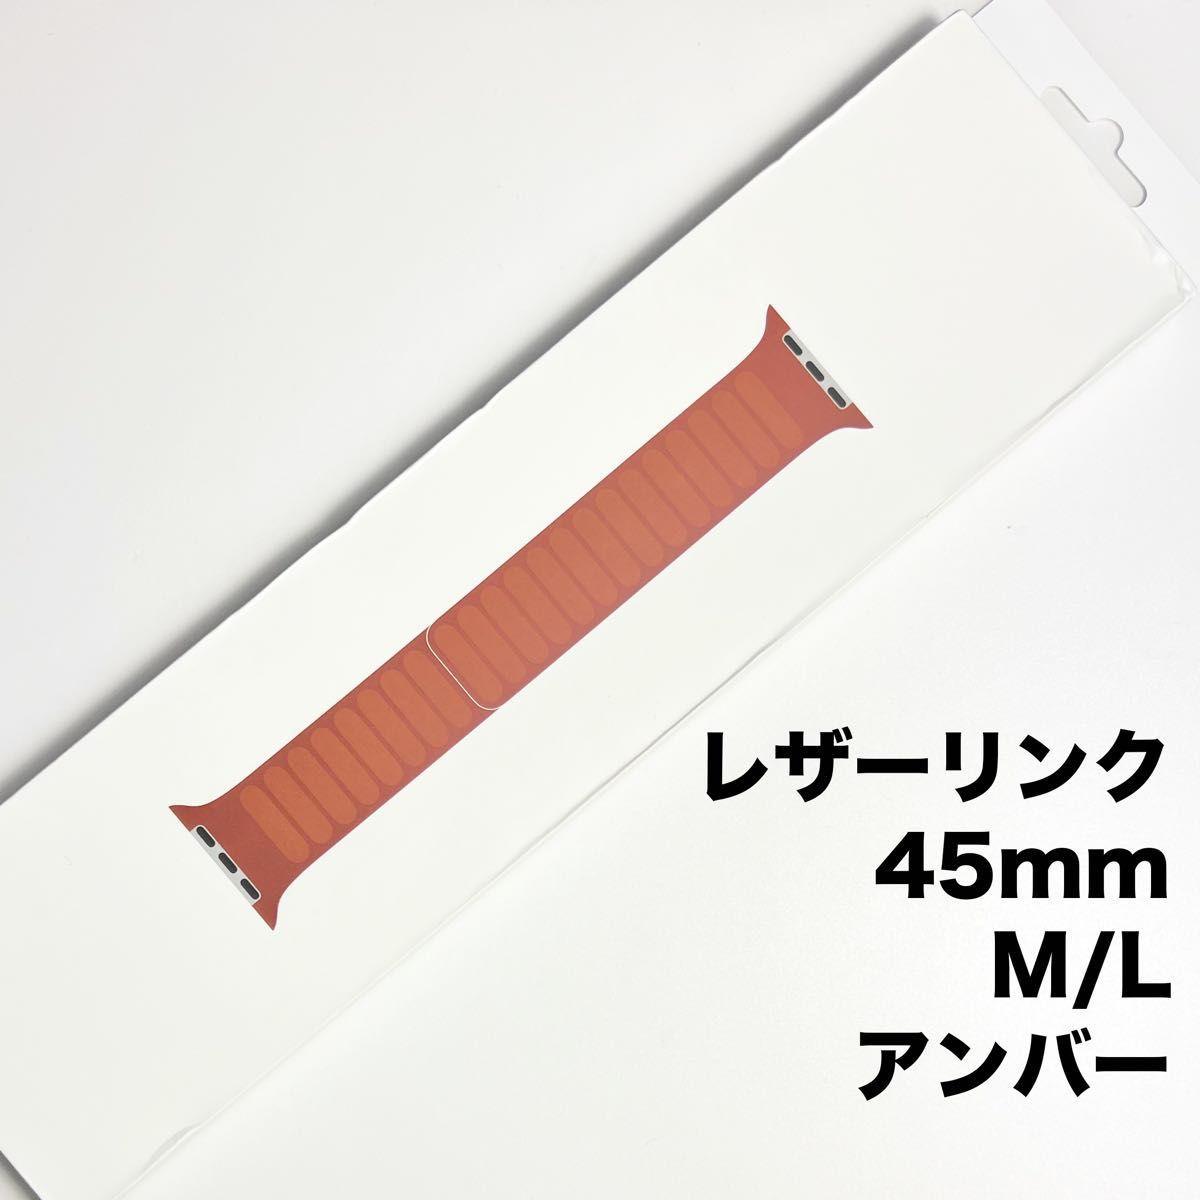 【SALE】アップル純正 アップルウォッチバンド レザーリンク マグネット式 45mm M/Lサイズ アンバー